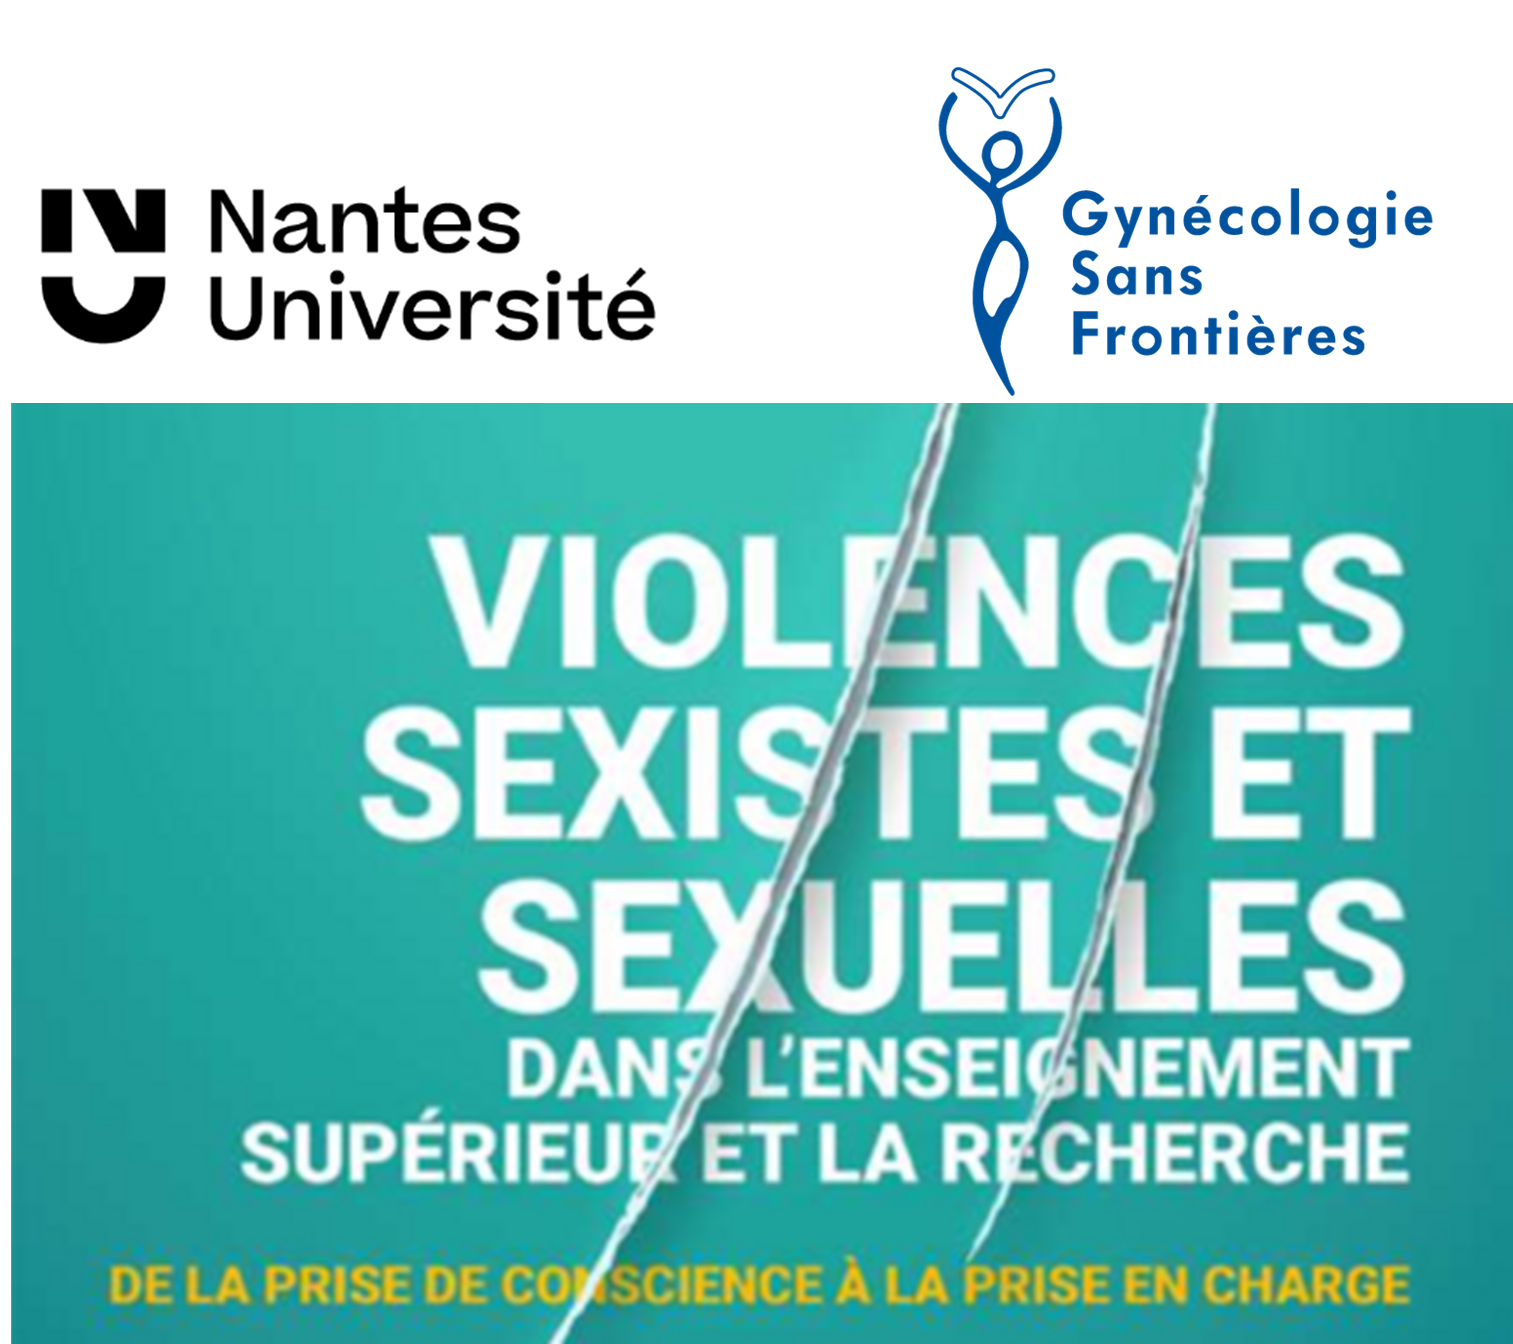 Nantes Université – 24 novembre 2022 – Sensibilisation des étudiants et des personnels aux violences sexuelles et sexistes : une conférence animée par Gynécologie Sans Frontières